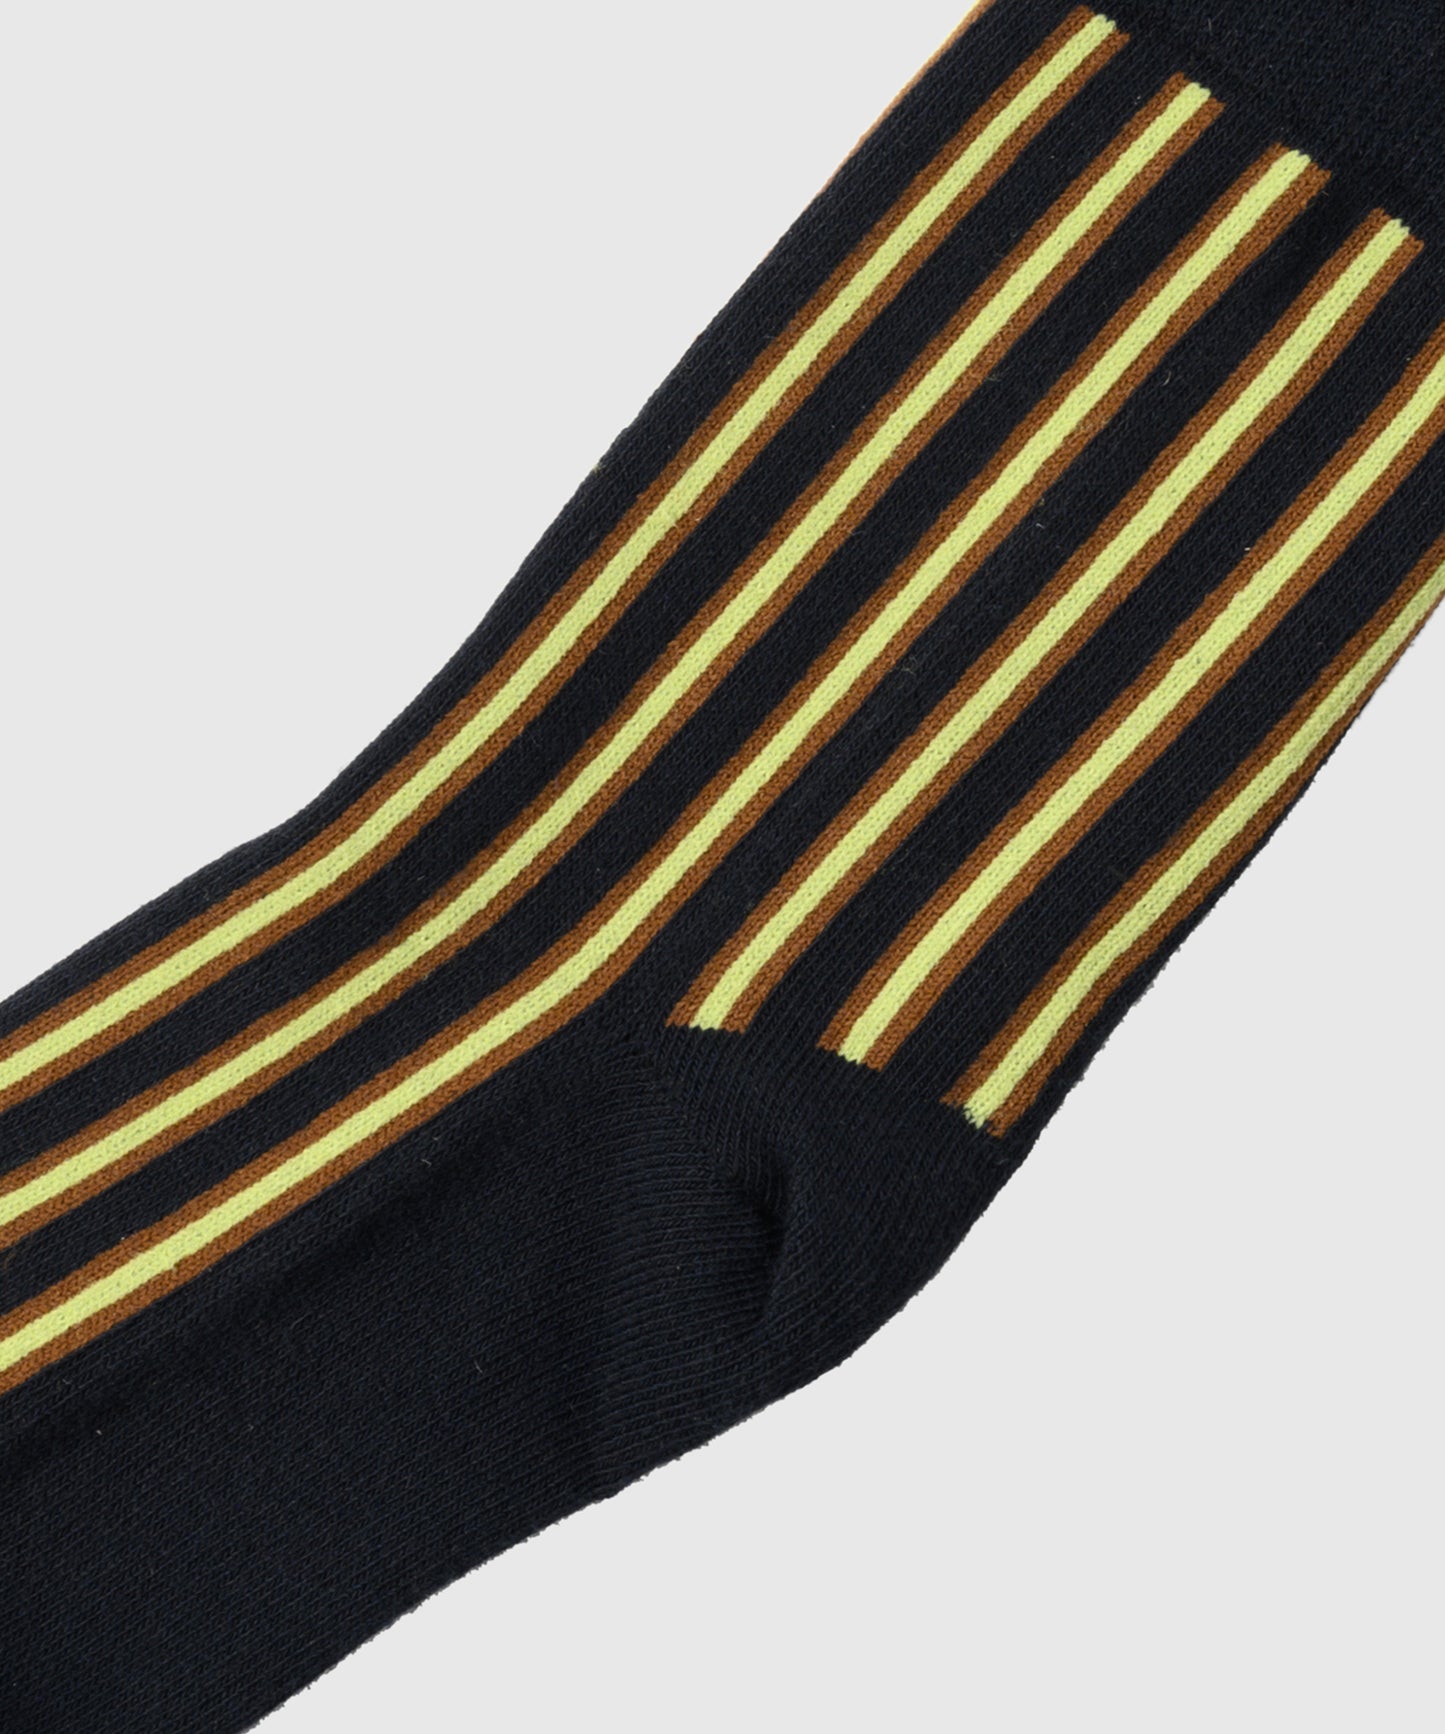 HOME 3-pack Retro Striped Split-toe Socks